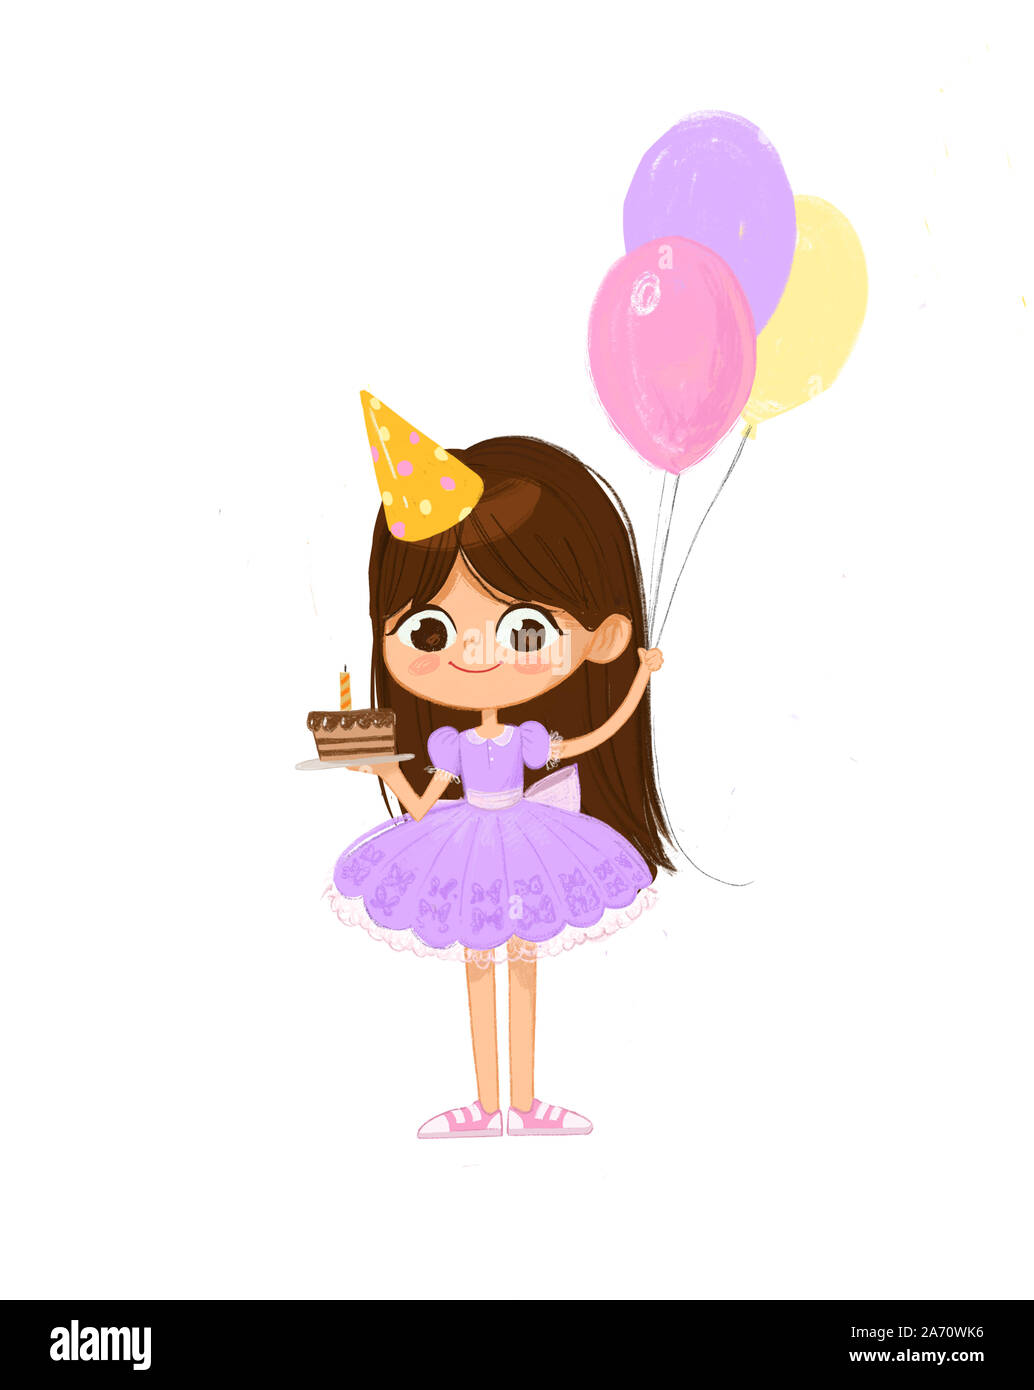 Illustrazione di una capigliatura scura ragazza indossando abiti di lavanda e Compleanno Hat felicemente Jump, tenendo la torta di compleanno e palloncini. Biglietto di auguri di compleanno invito Foto Stock